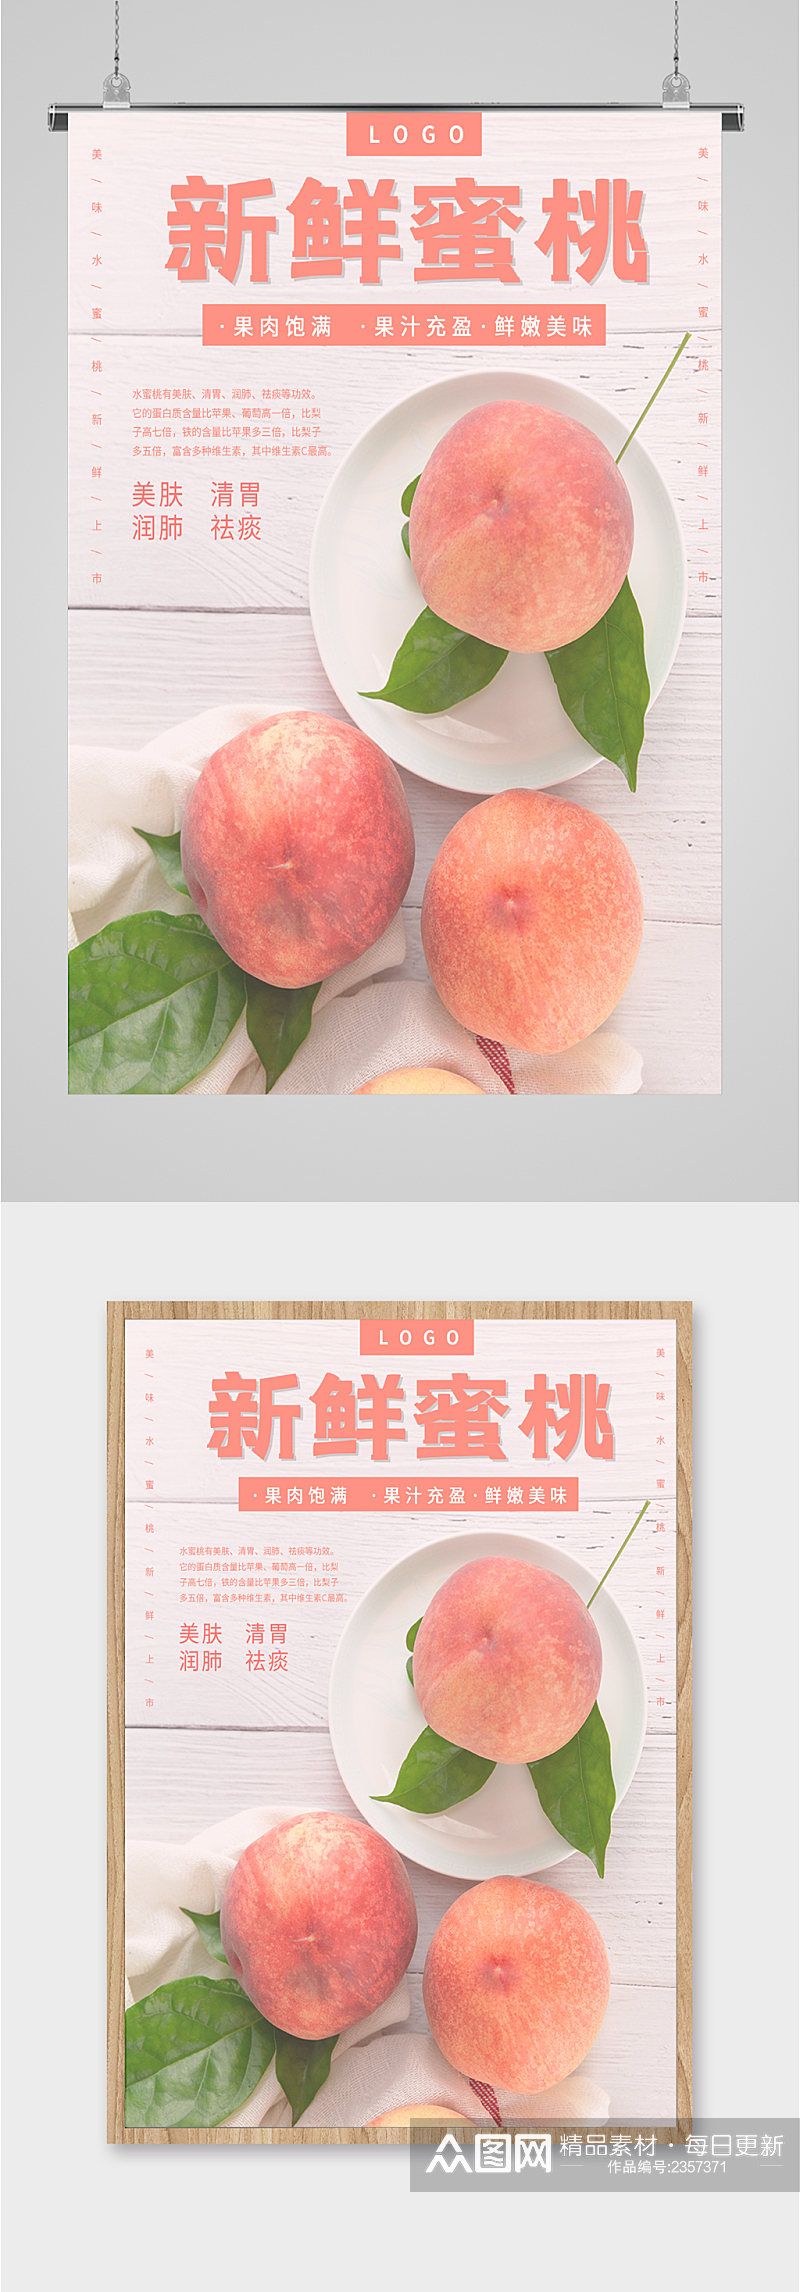 新鲜蜜桃水果海报素材